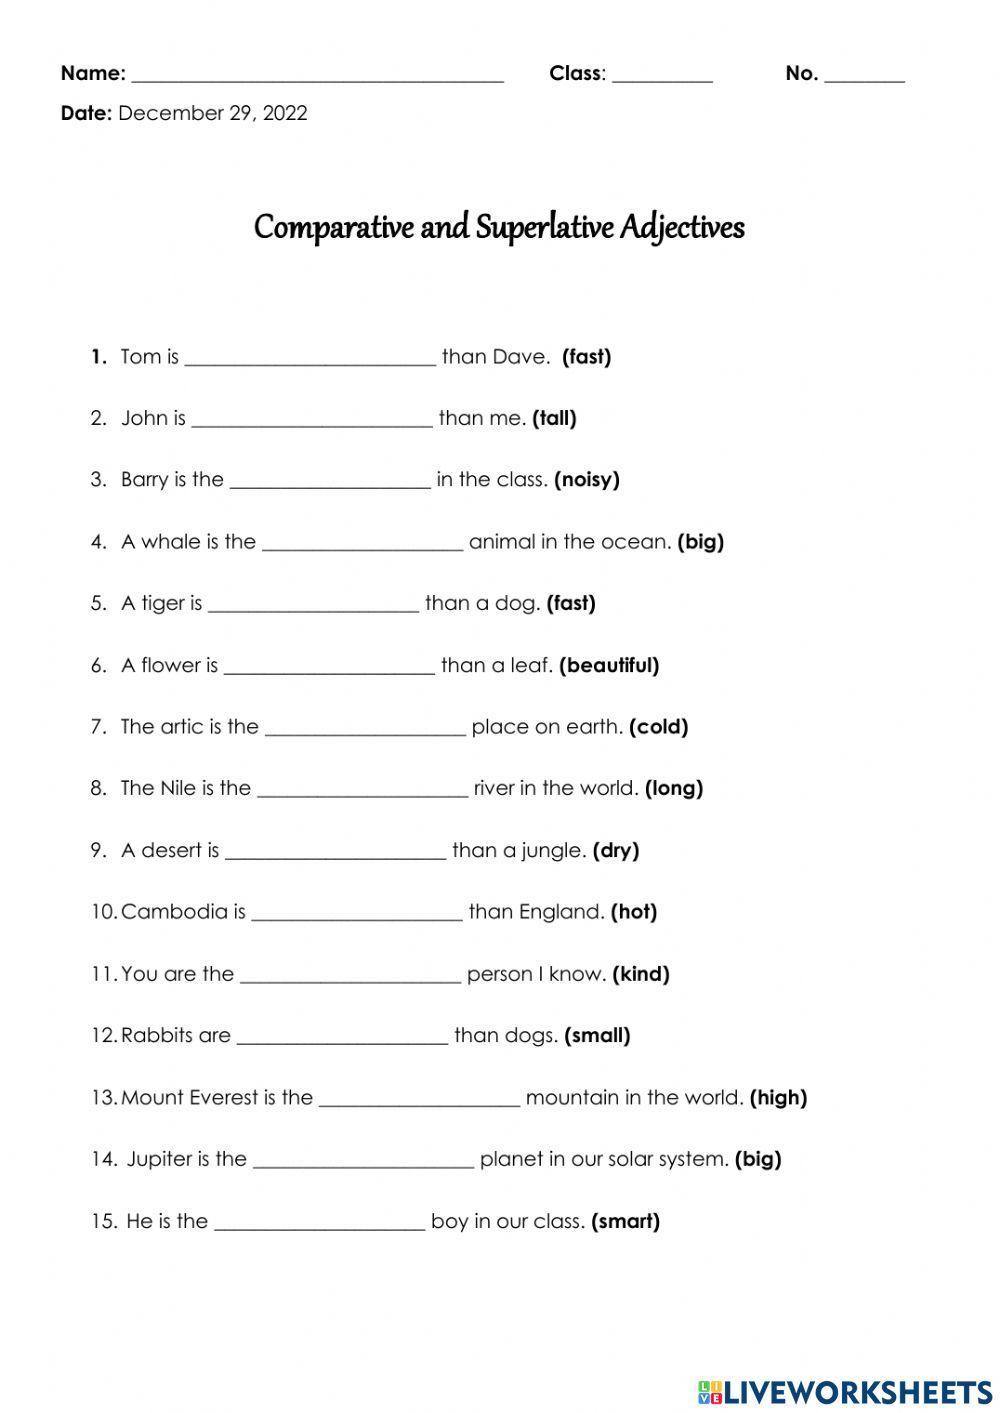 comparative-and-superlative-adjective-worksheet-worksheet-live-worksheets